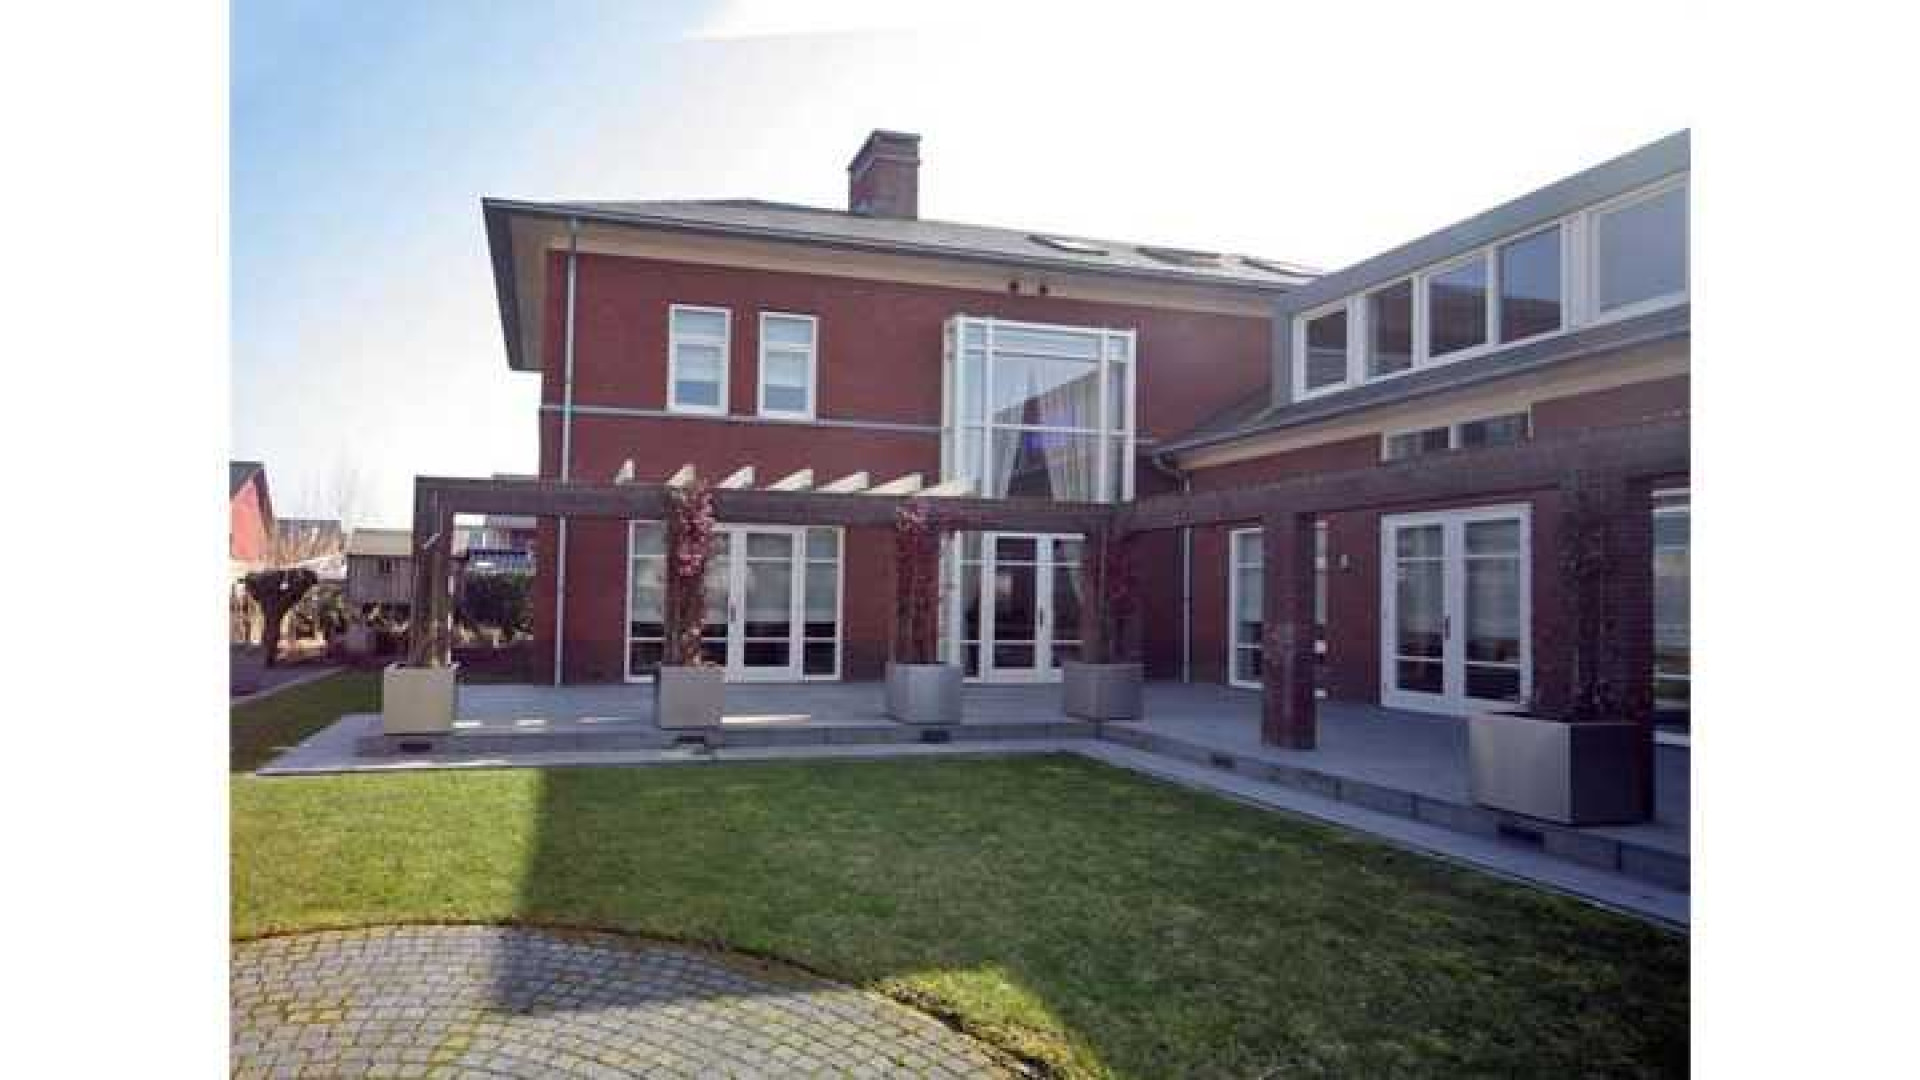 Villa Wesley en Yolanthe in Vleuten eindelijk verkocht. Zie foto's